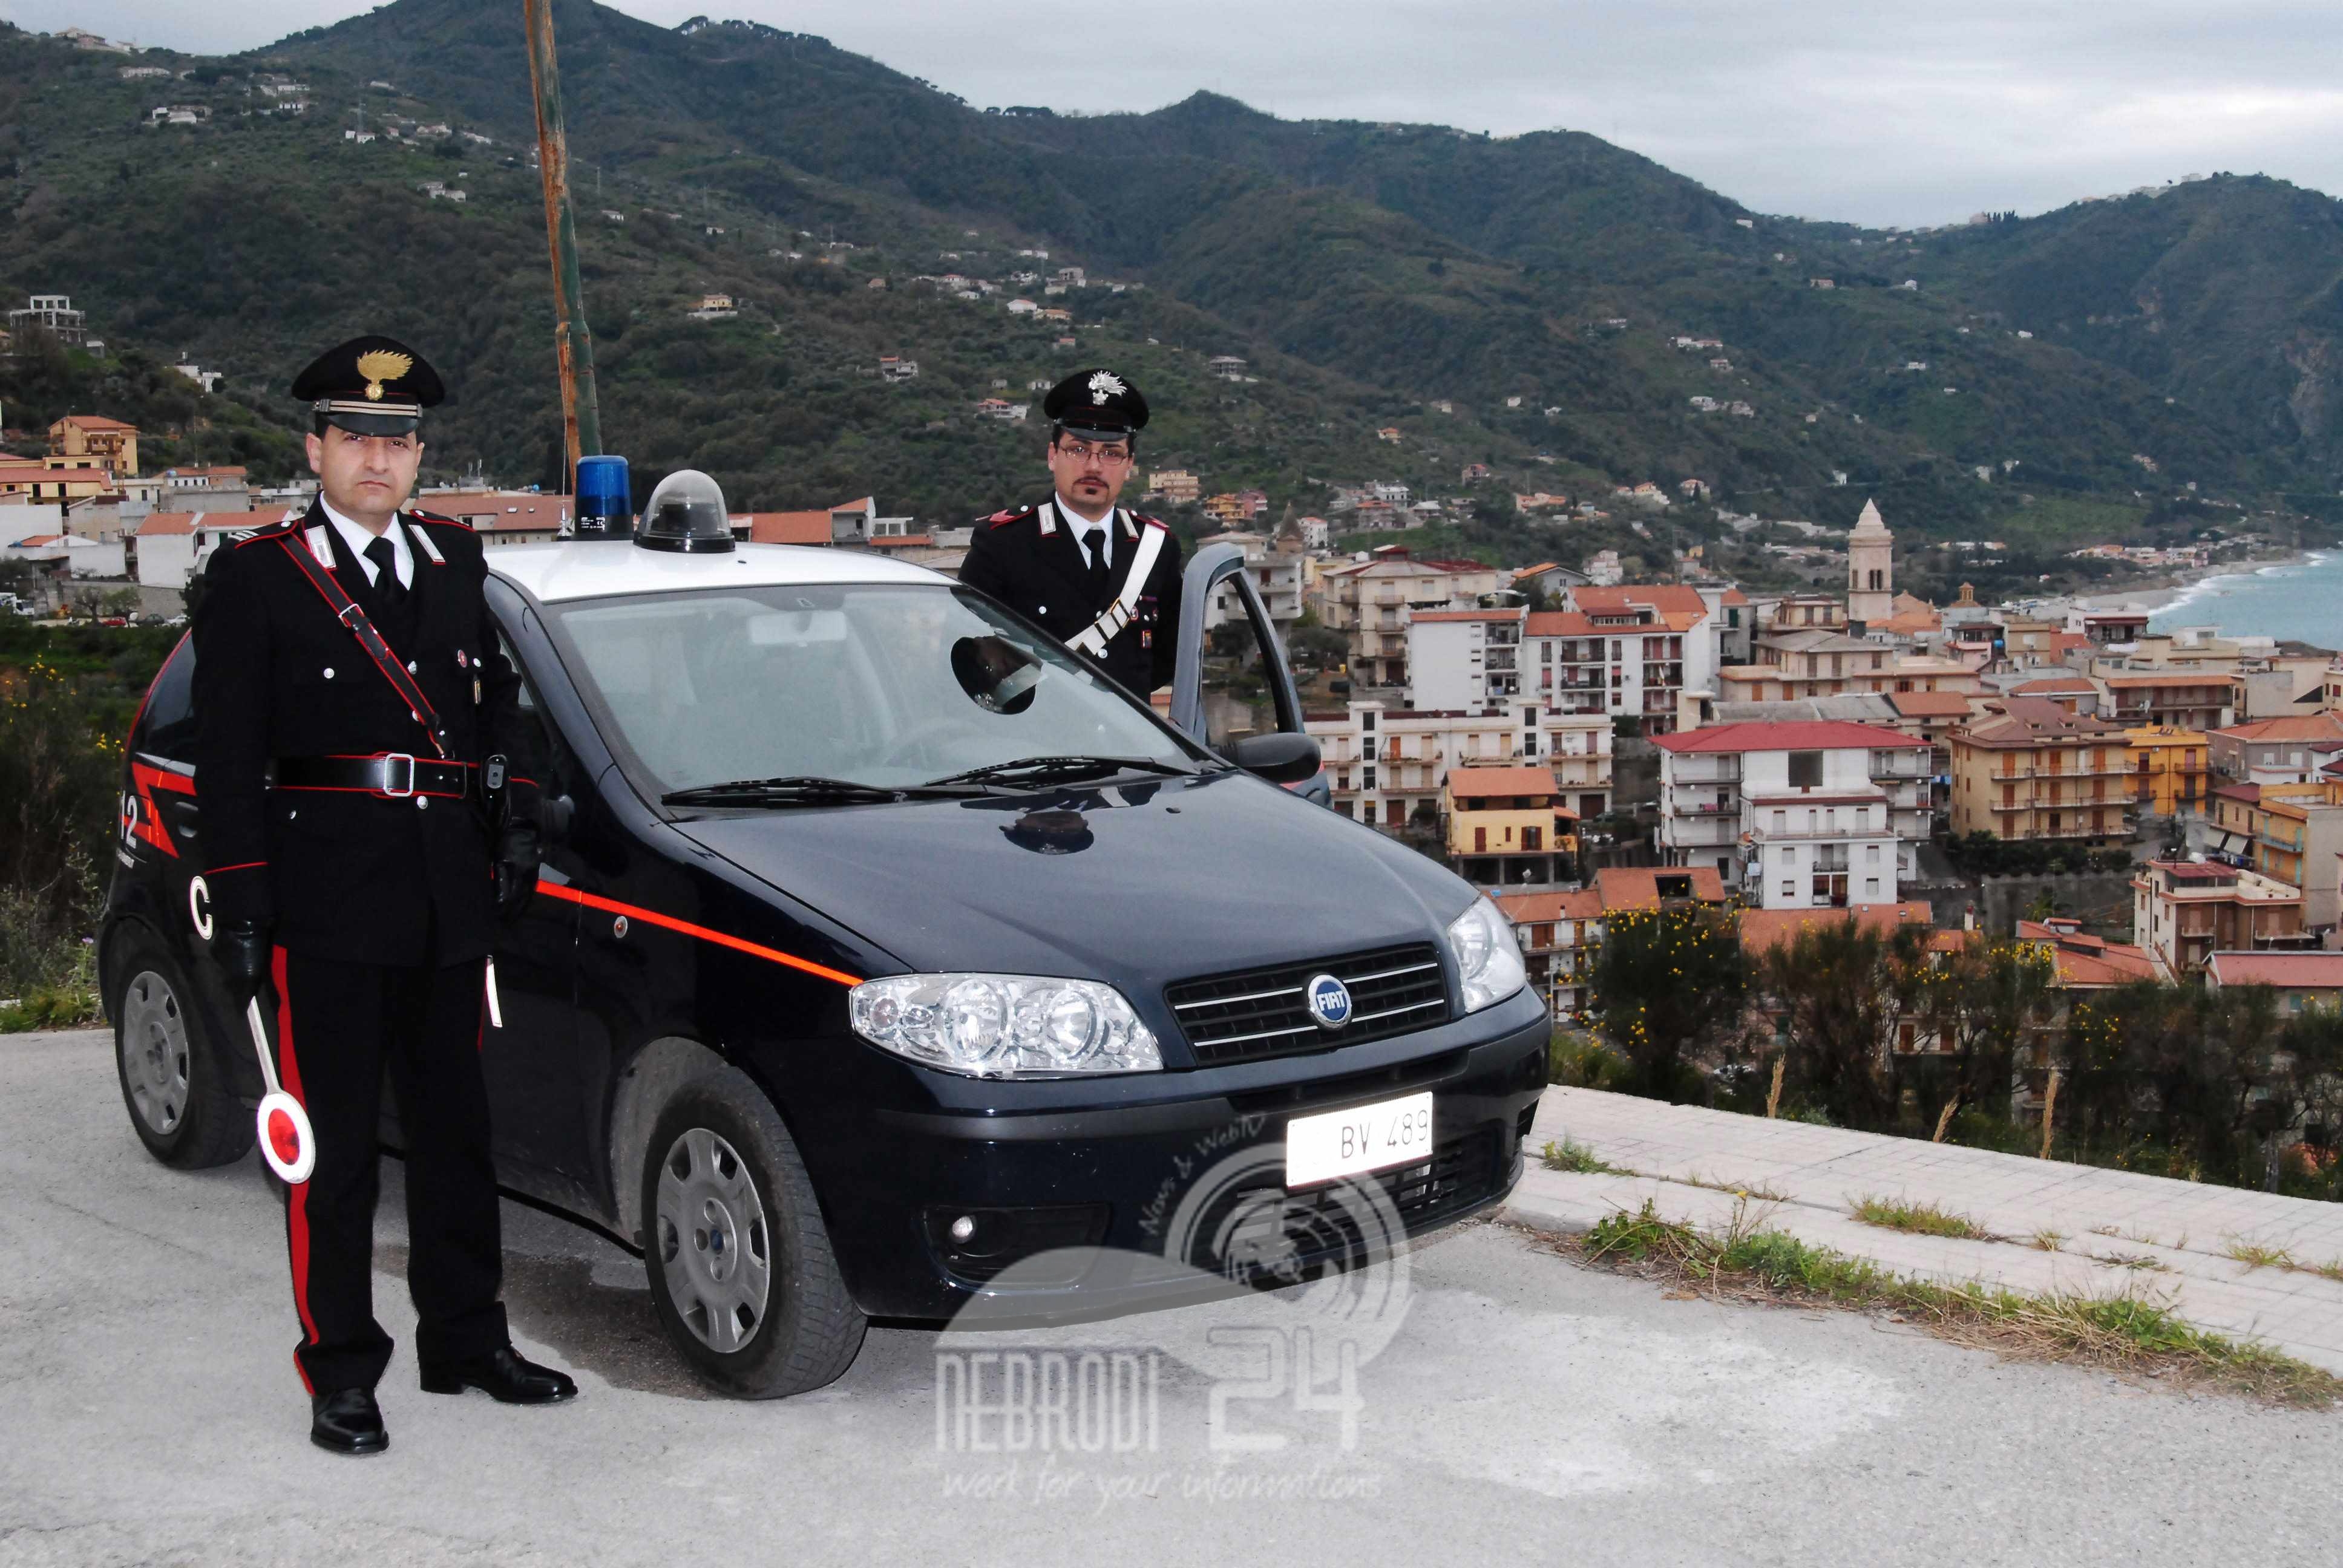 Gioiosa Marea – I carabinieri arrestano due uomini del luogo